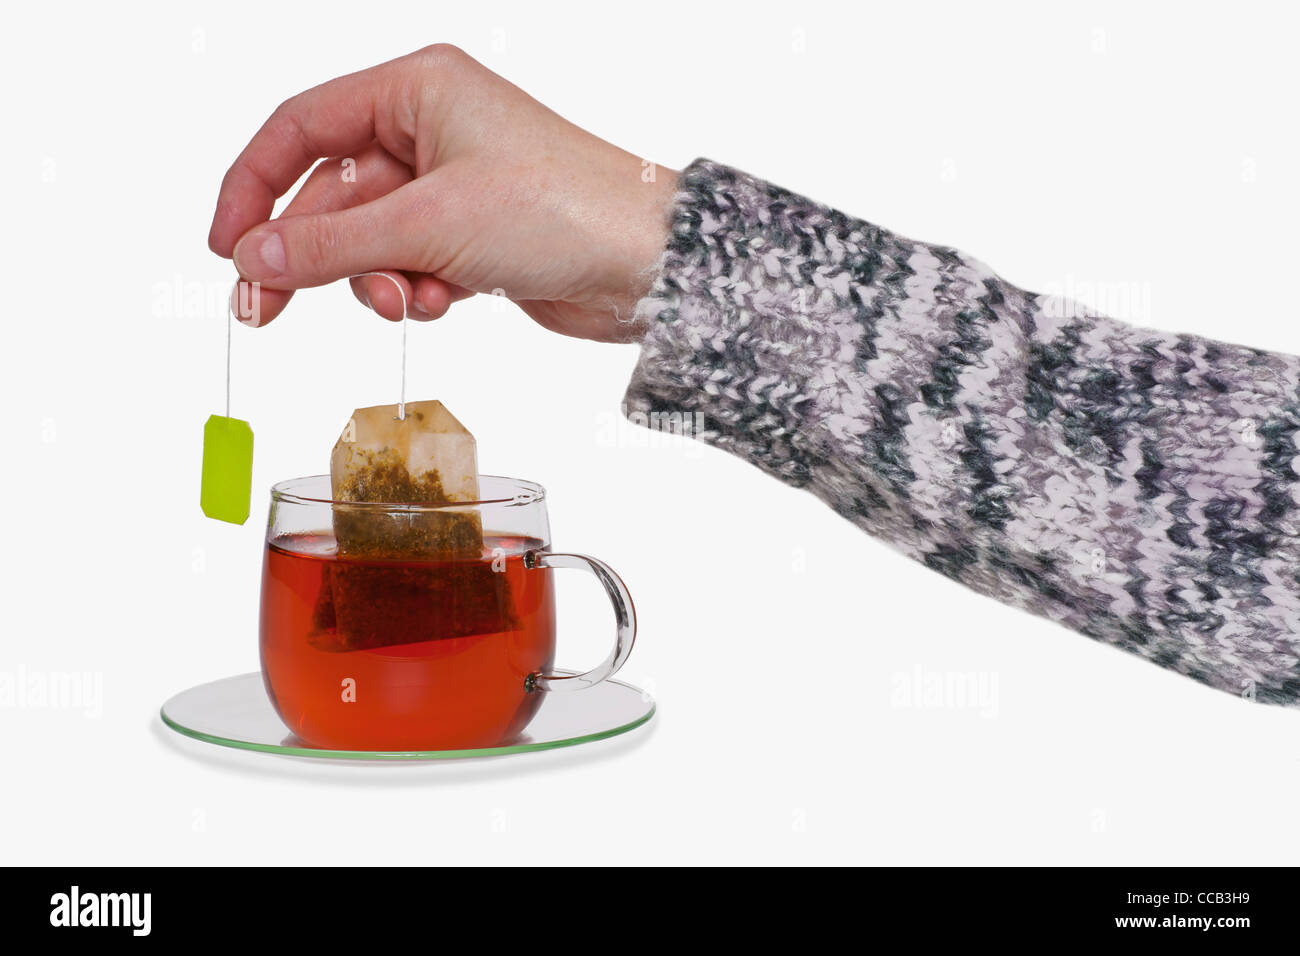 aus Einer Tasse Mit Tee Wird der Teebeutel Herausgezogen | der Teebeutel wird aus einer Tasse mit Tee gezogen. Stockfoto